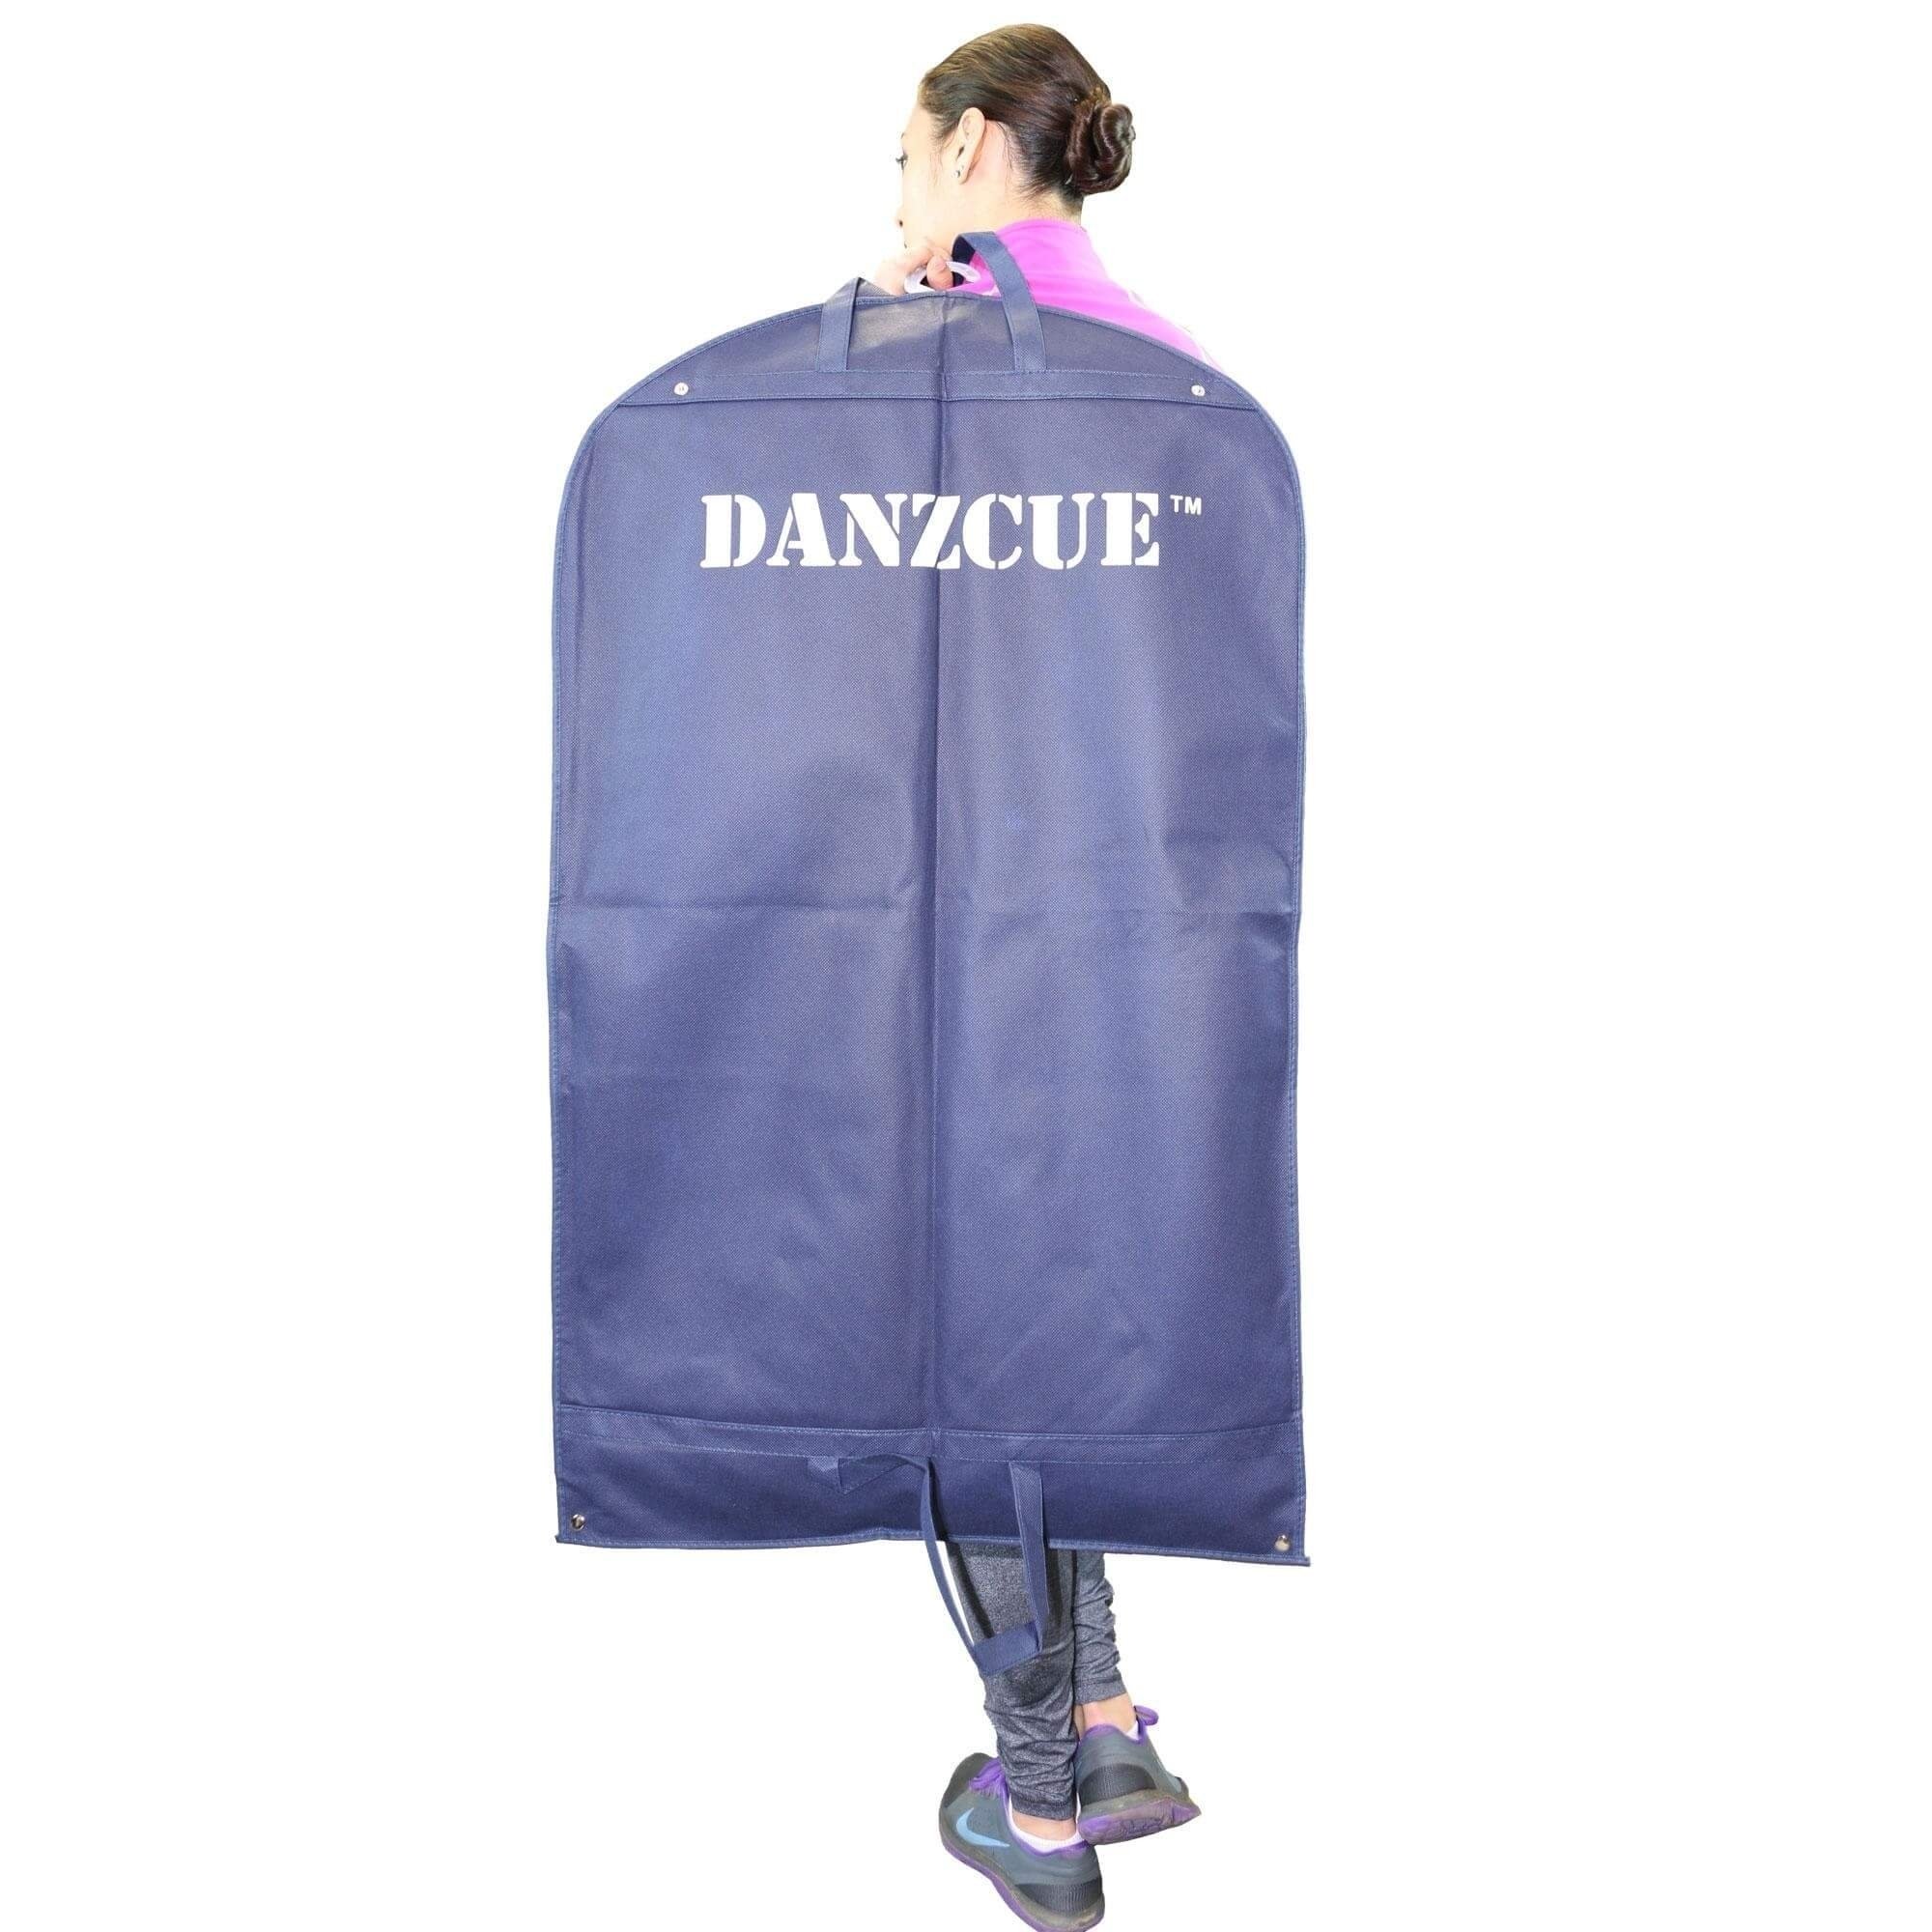 Danzcue "DANZCUE" Garment Bag